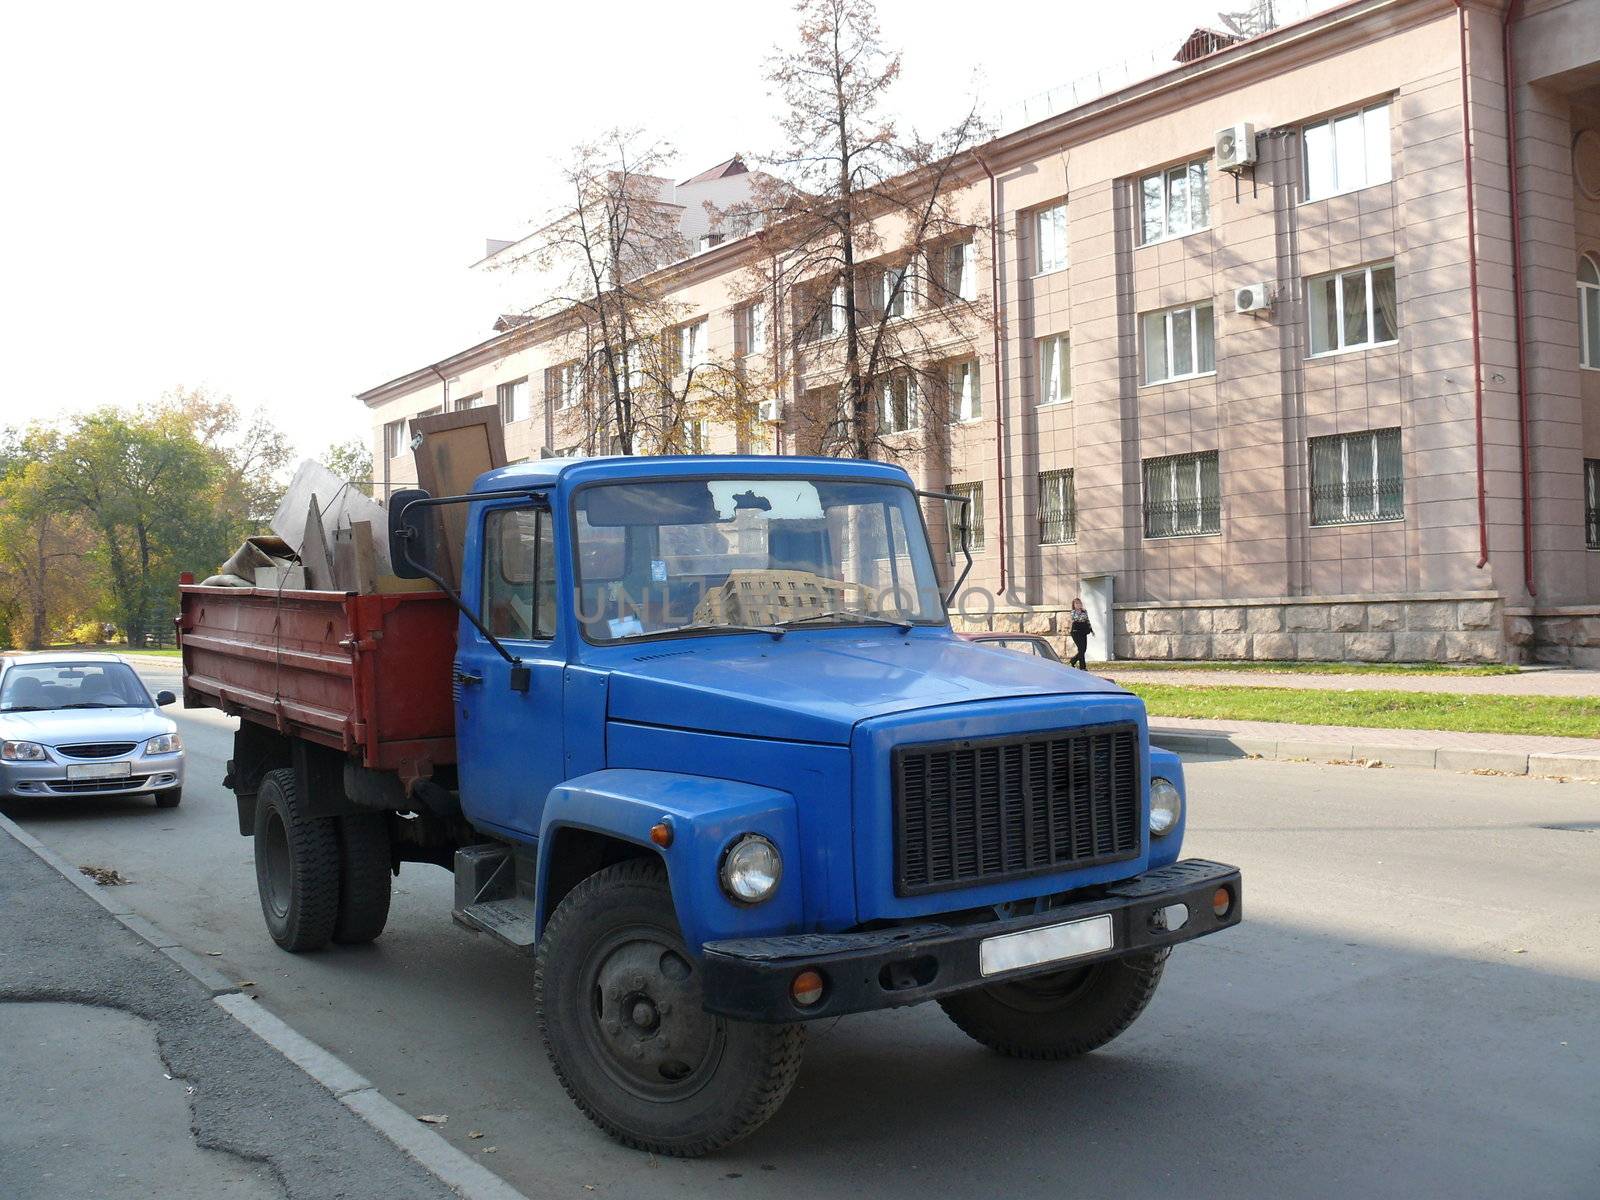 Russian truck in the street by Stoyanov